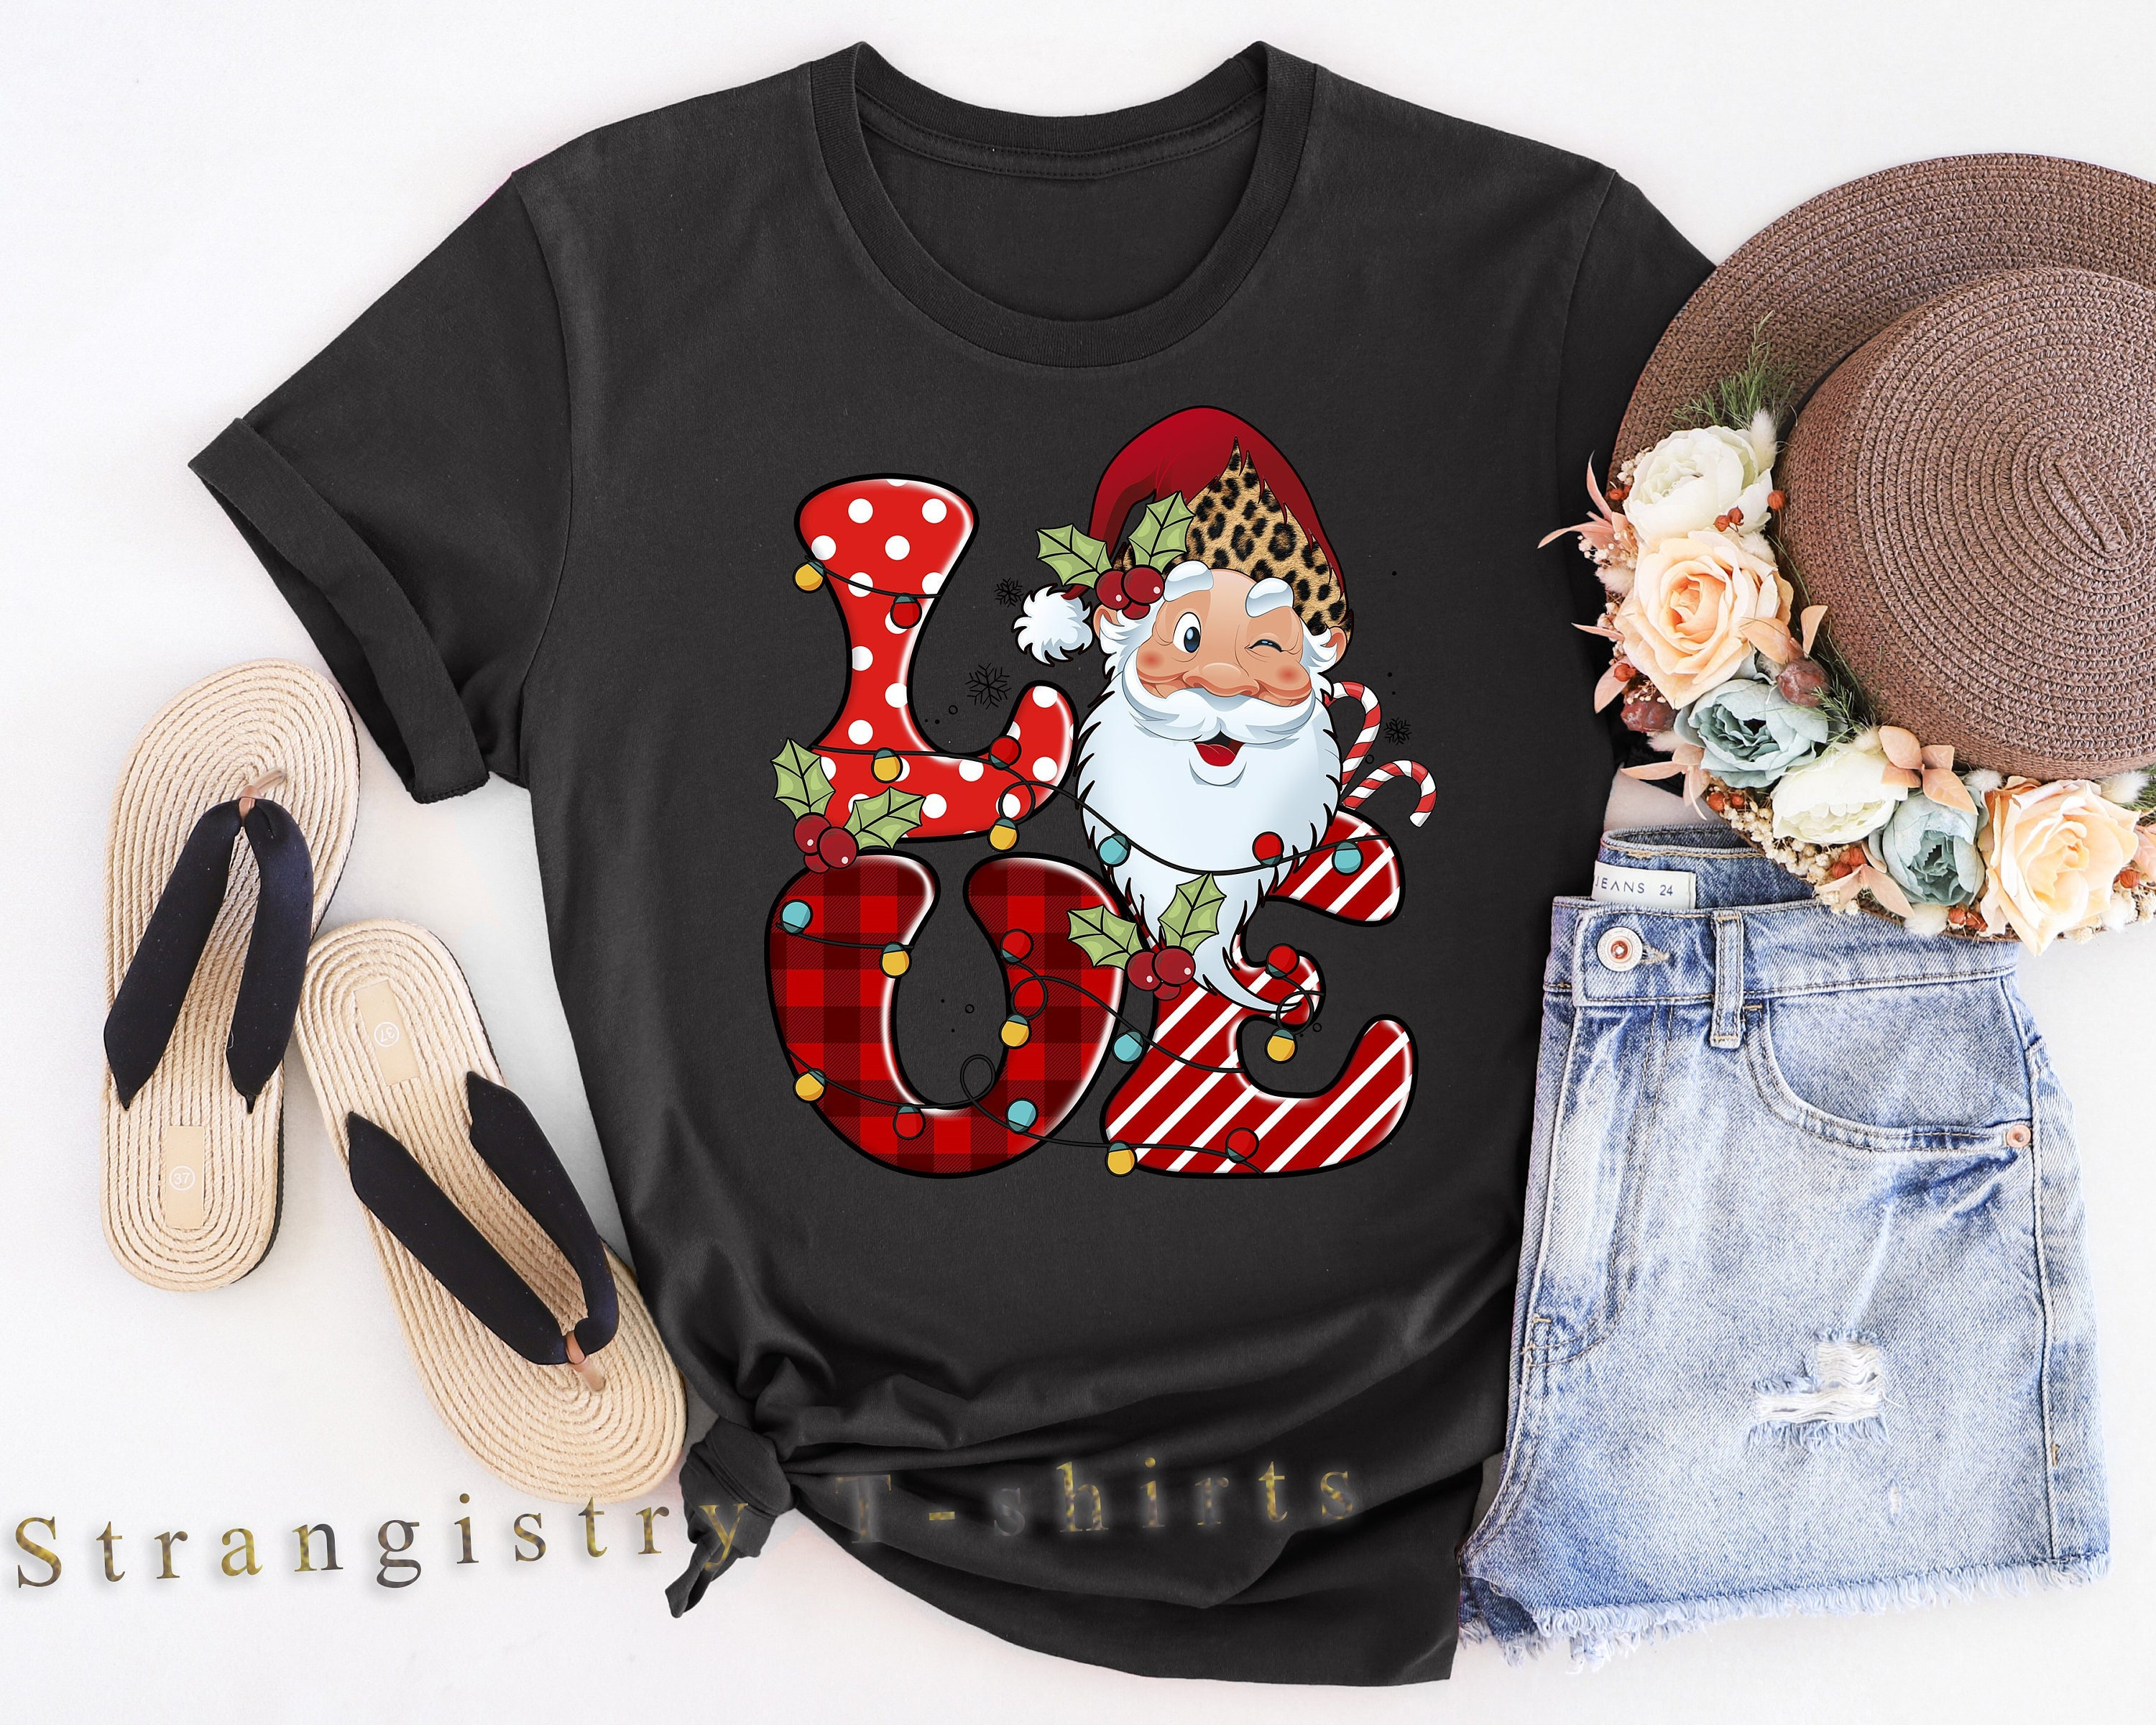 Christmas Shirt, Retro Christmas Shirt, Retro Love Christmas T-shirt, Santa Love T-shirt, Merry Christmas Shirt, Christmas Gift for Family